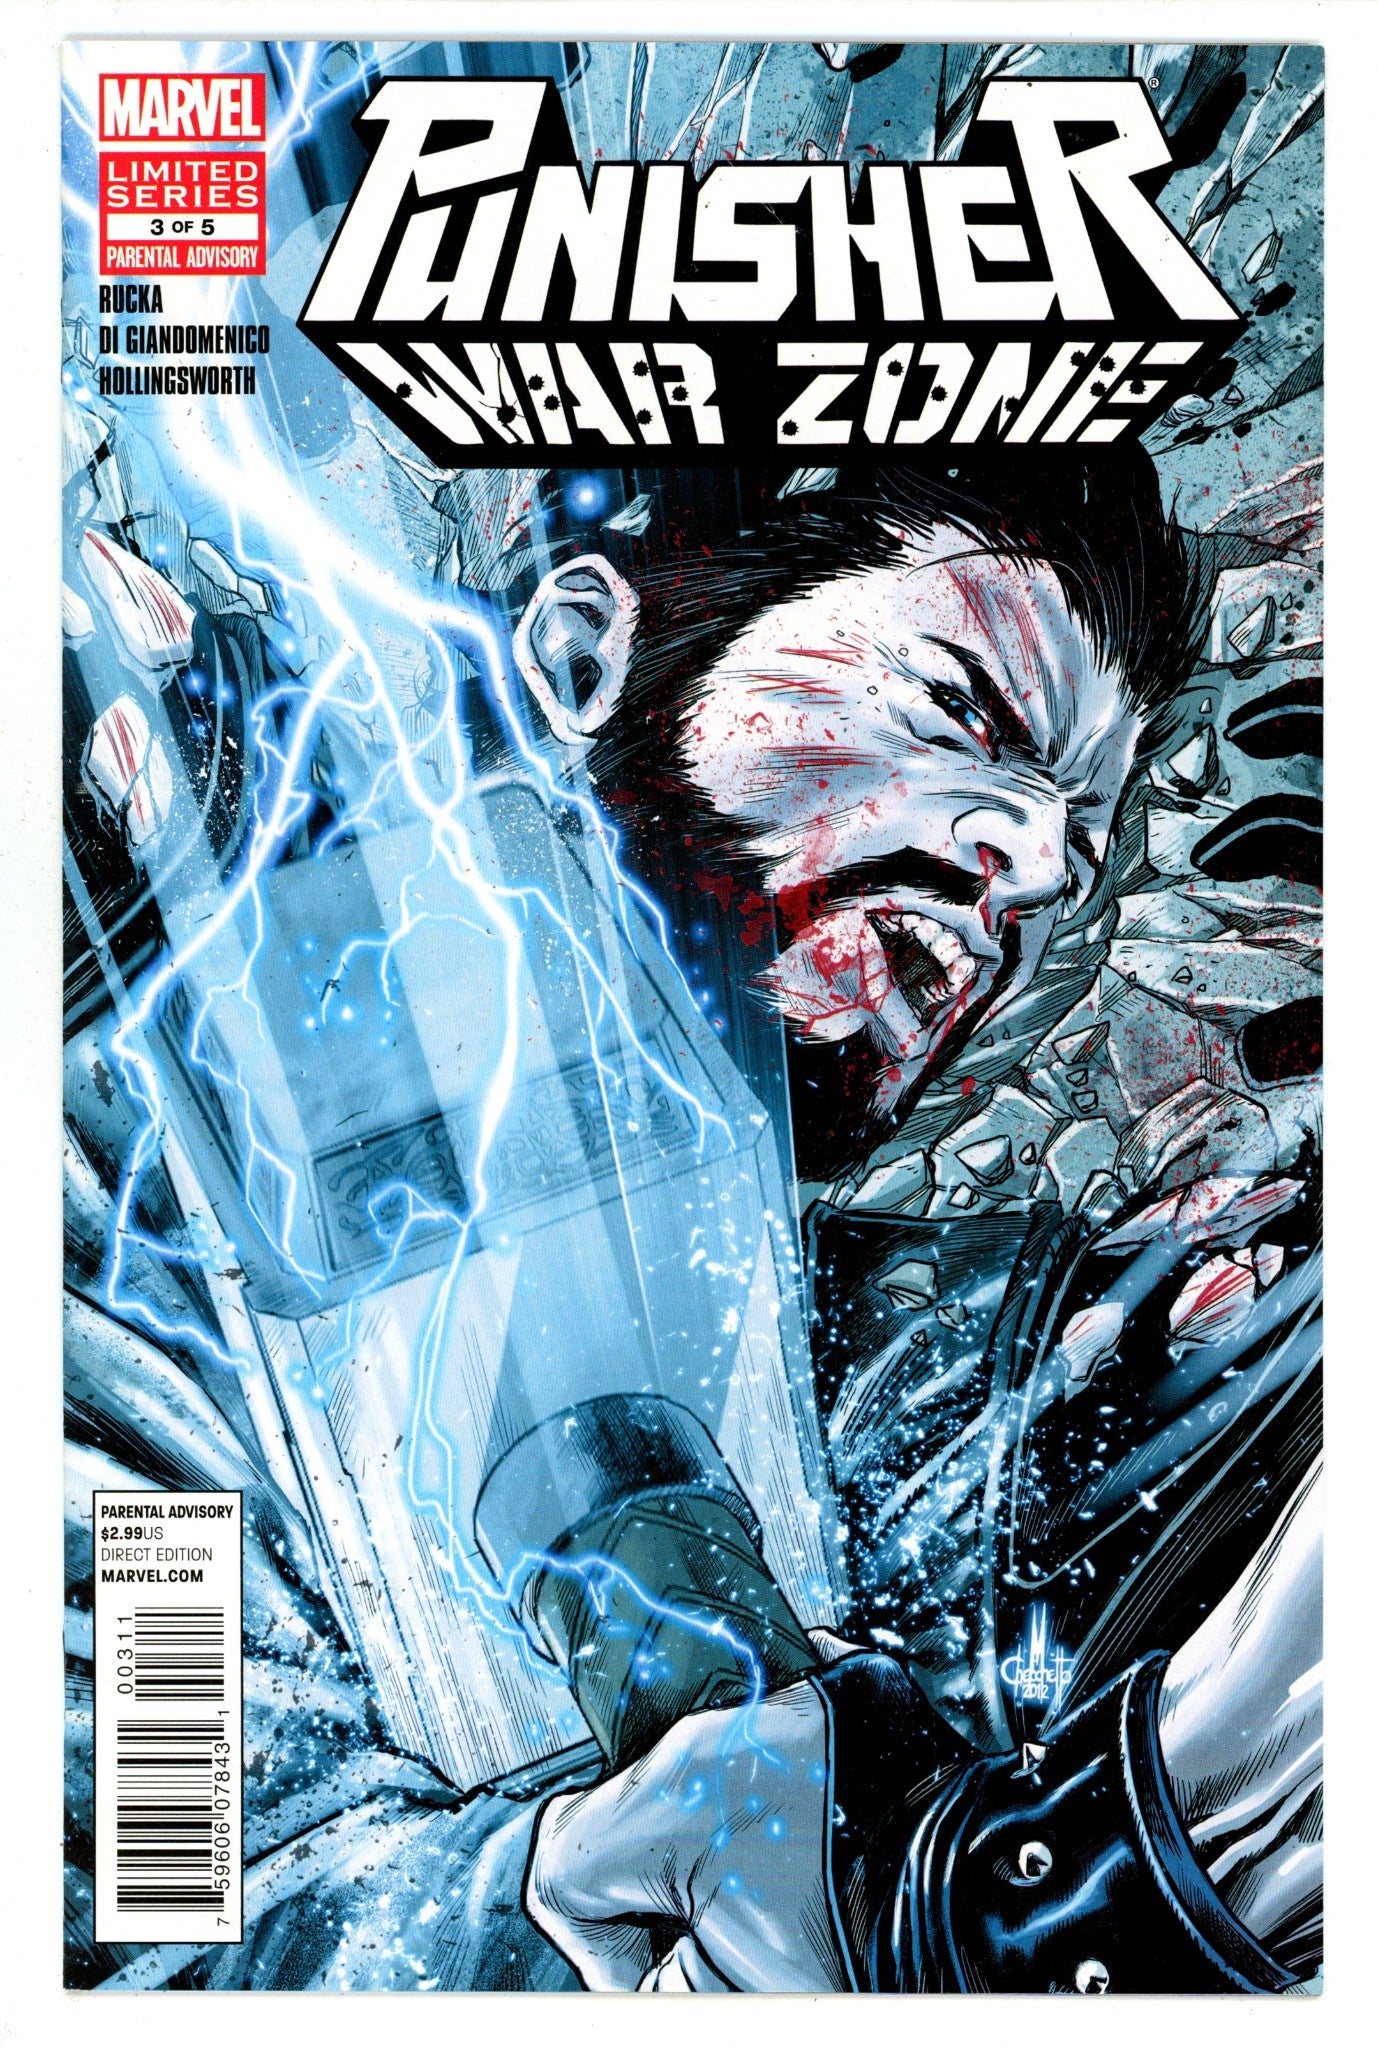 Punisher: War Zone Vol 3 3 High Grade (2013) 